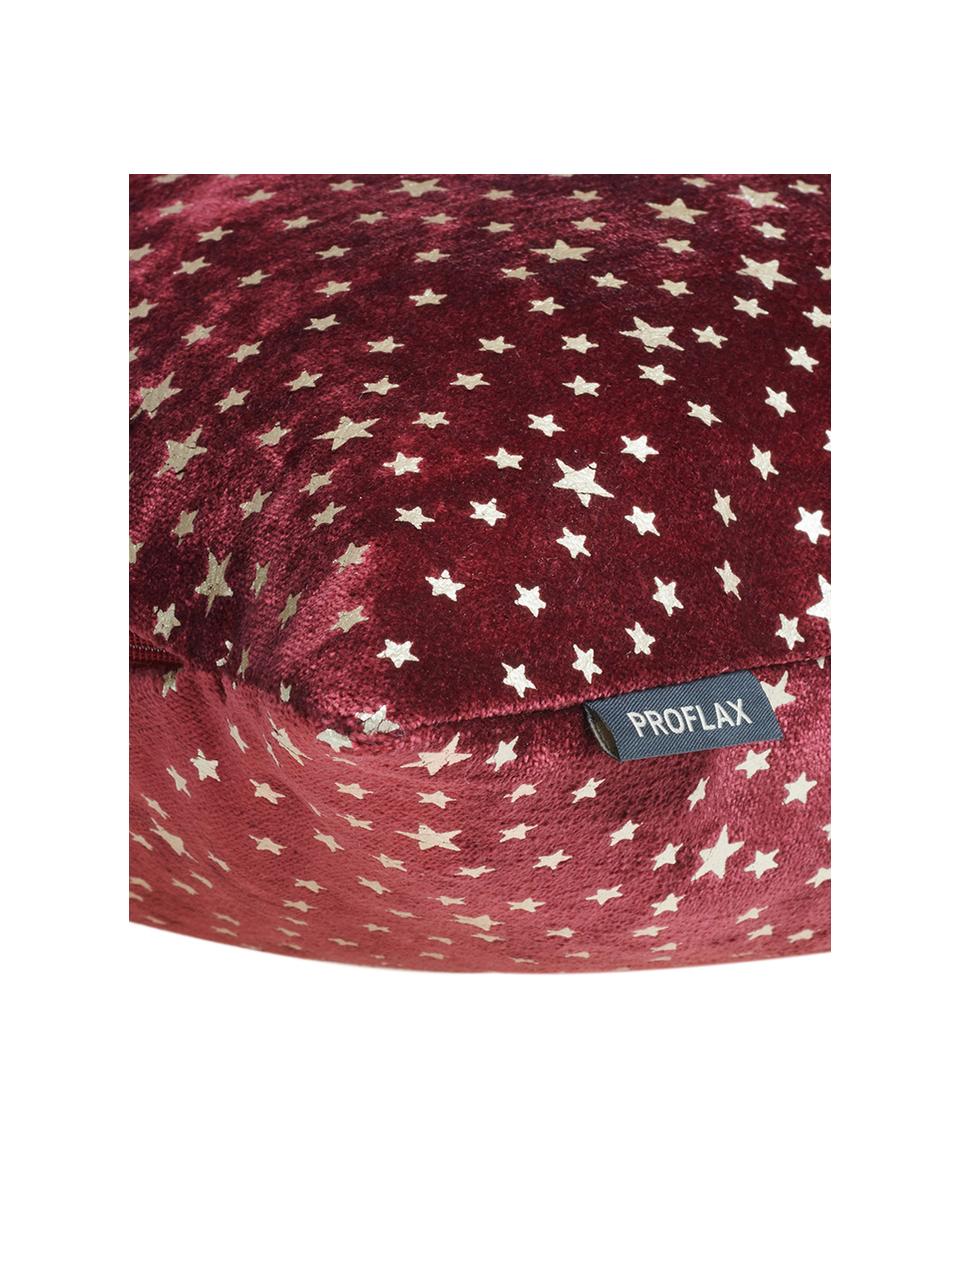 Fluwelen kussenhoes Estrella met goudkleurig glanzende sterren, Bovenzijde: polyester fluweel, Onderzijde: polyester, Marsala rood, 40 x 40 cm